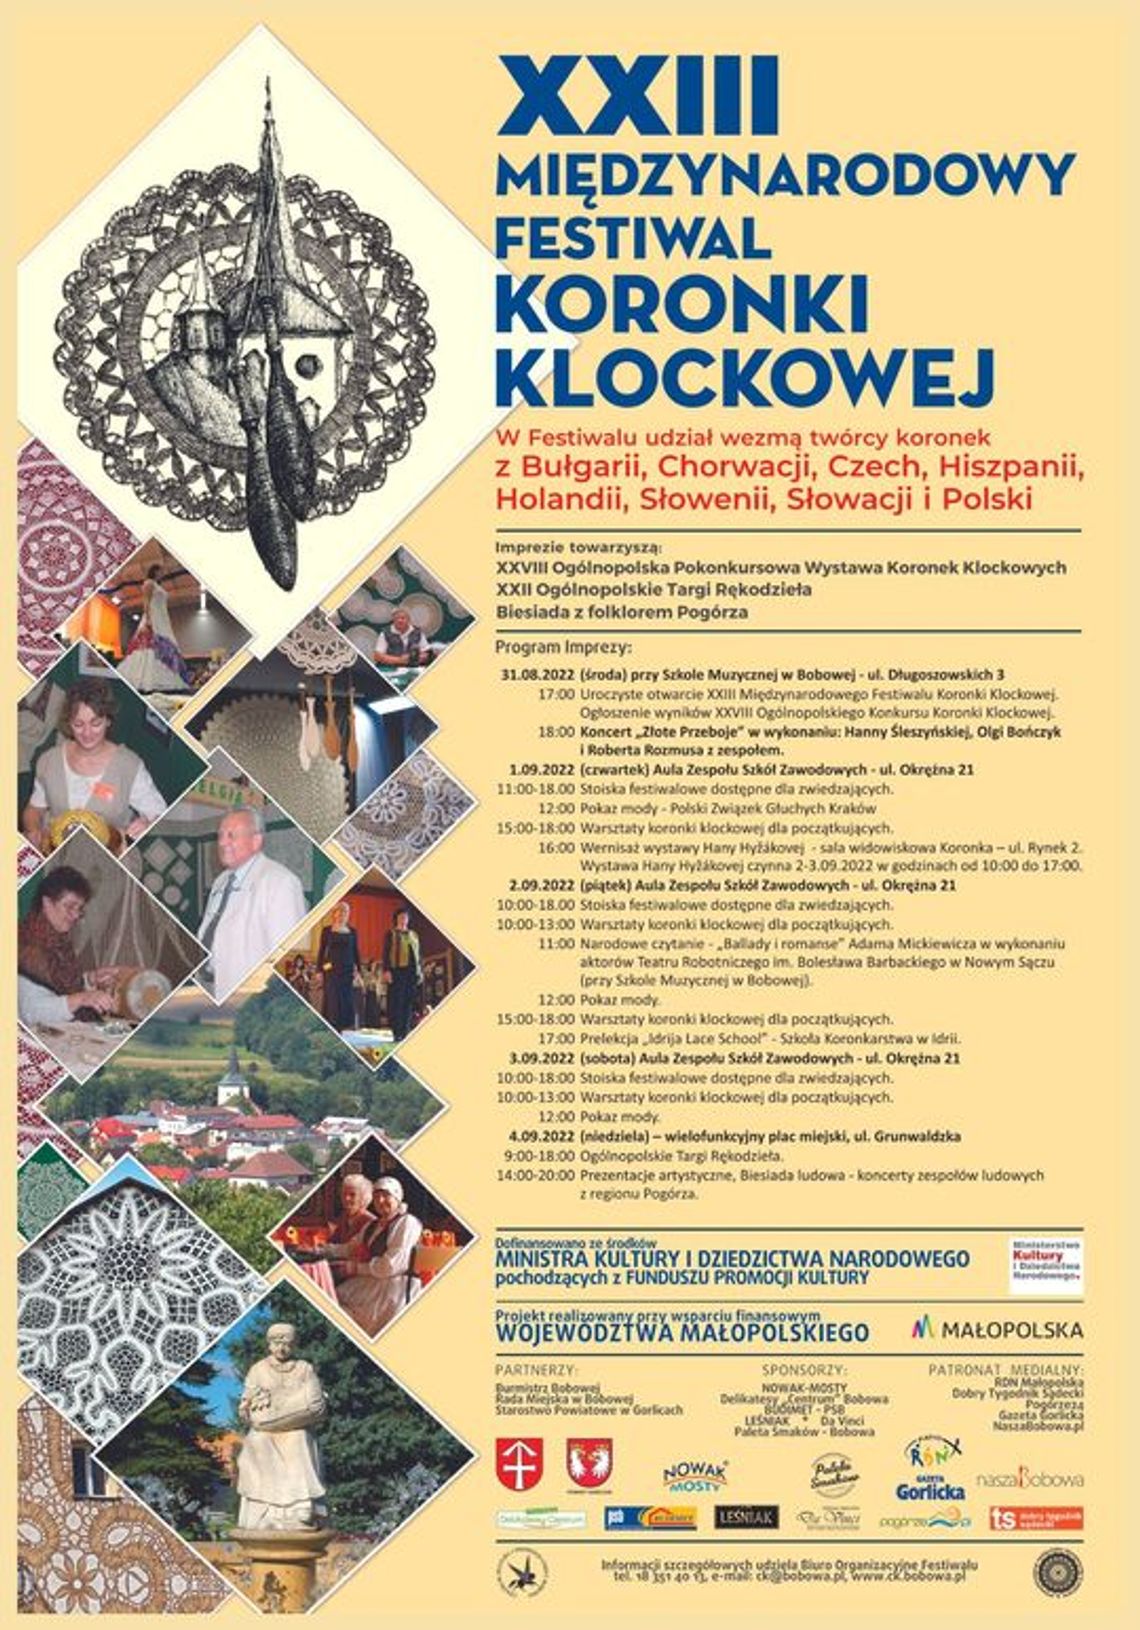 XXIII Międzynarodowy Festiwal Koronki Klockowej | zapowiedzi imprez – halogorlice.info